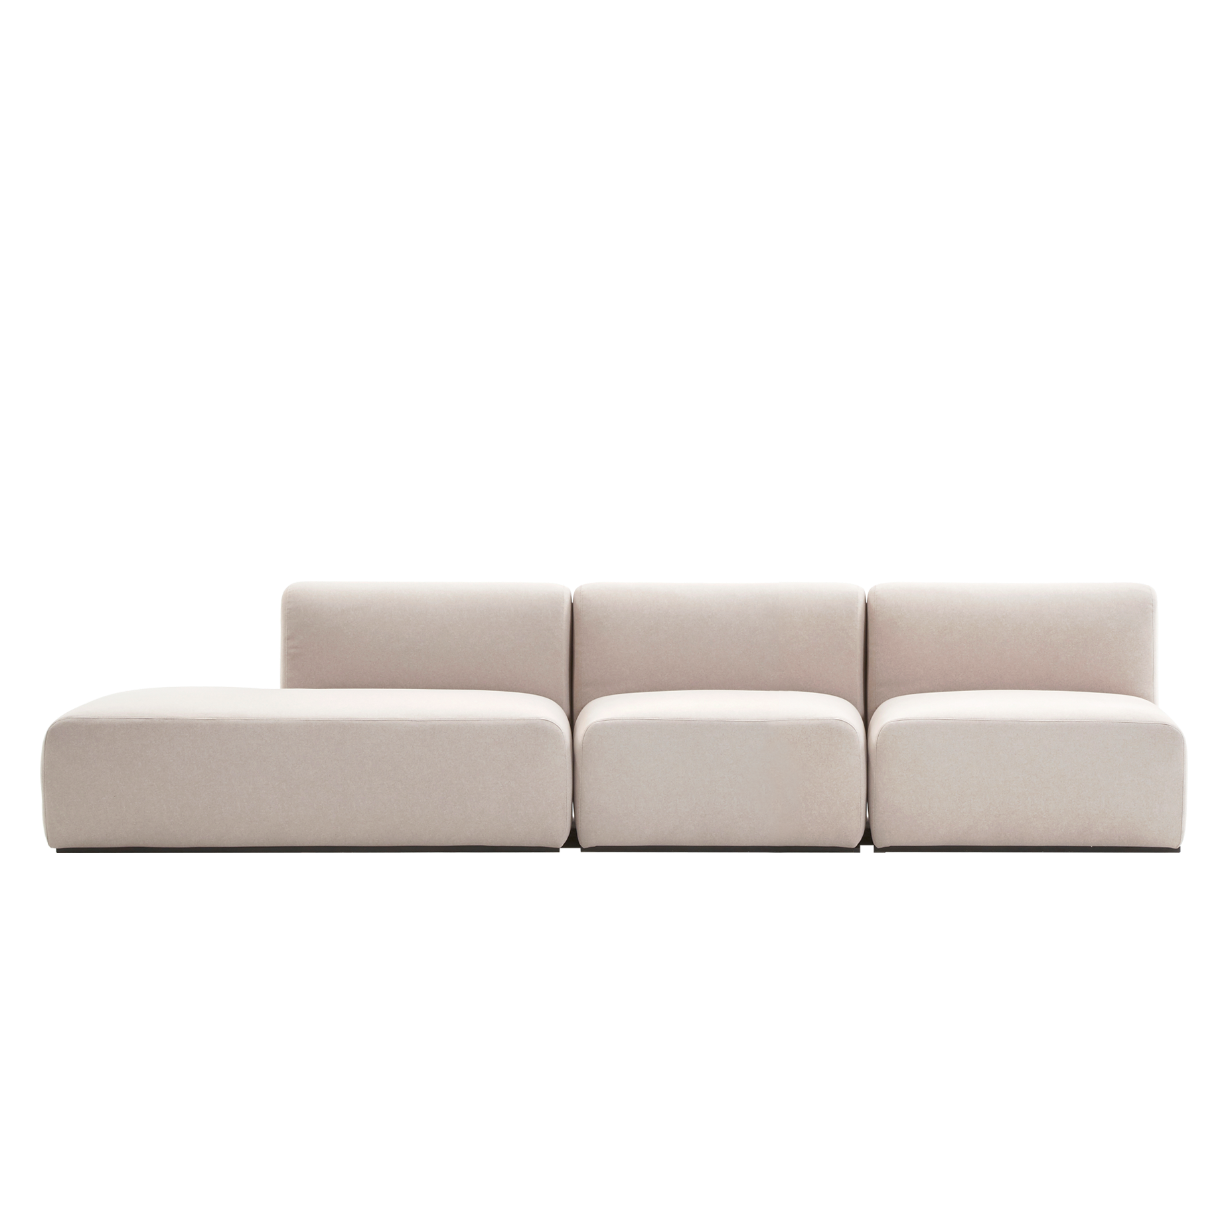 (주)도이치 DOICH ® Aquaclean PEN3 modular couch sofa  도이치 Pen3  4인 카우치 소파 ( 카우치+1인+1인) /(스페인 아쿠아클린)  [3주 주문제작]